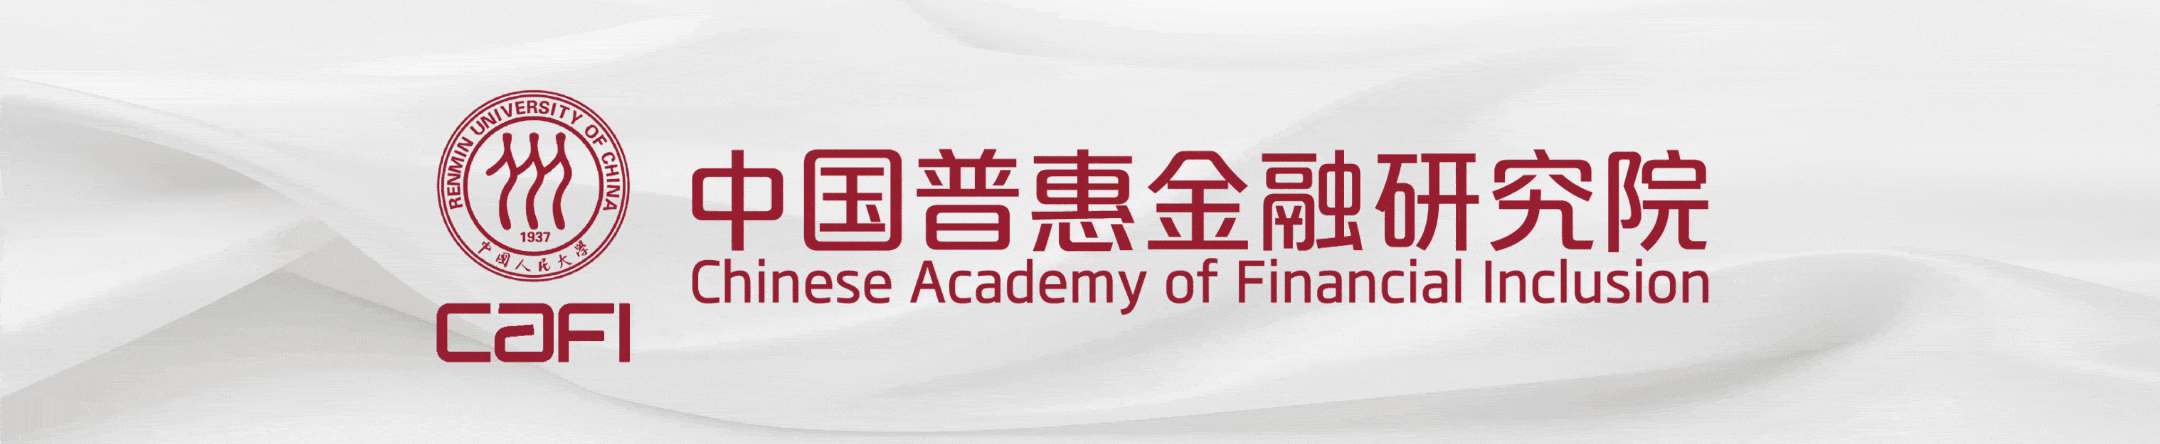 快讯 | CAFI举办金融聚合器助力普惠金融能力建设交流会